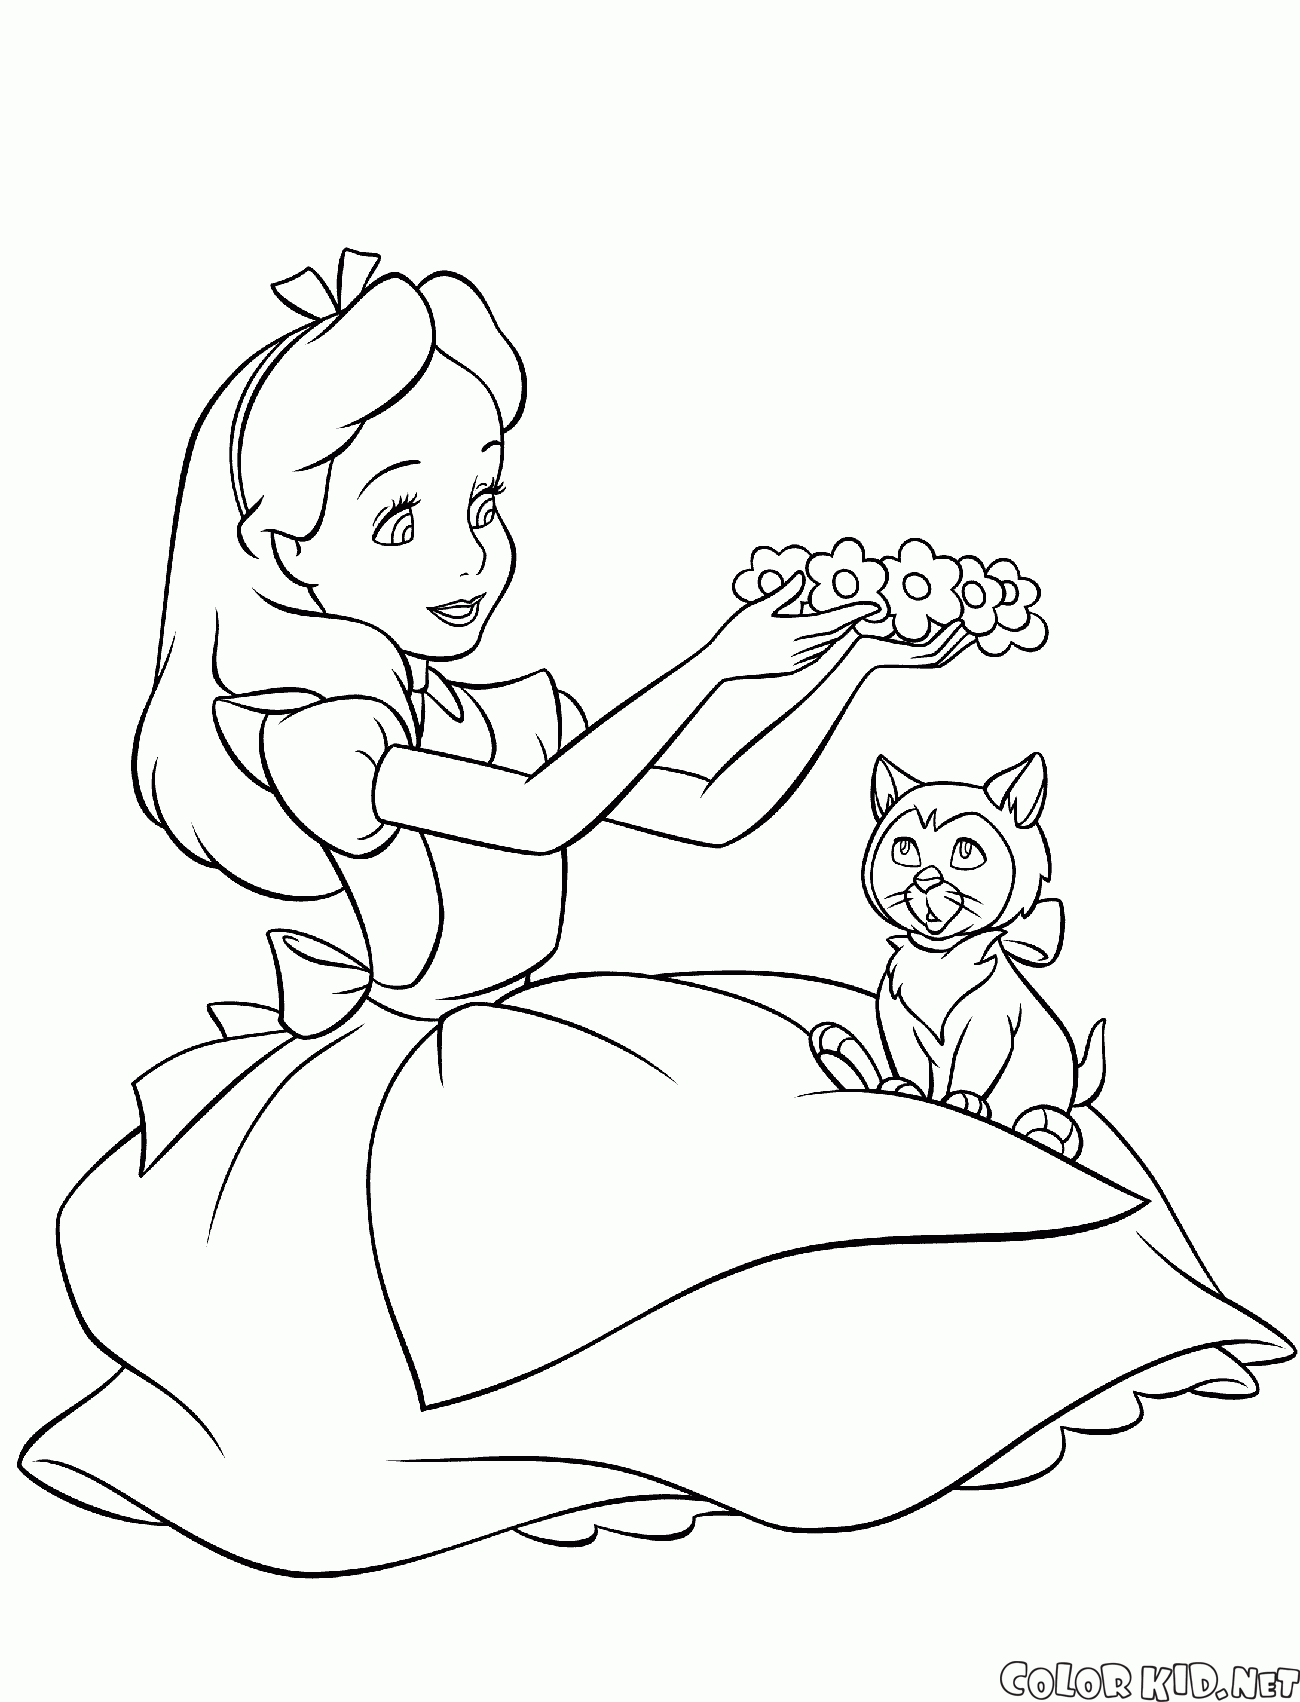 愛麗絲和小貓玩